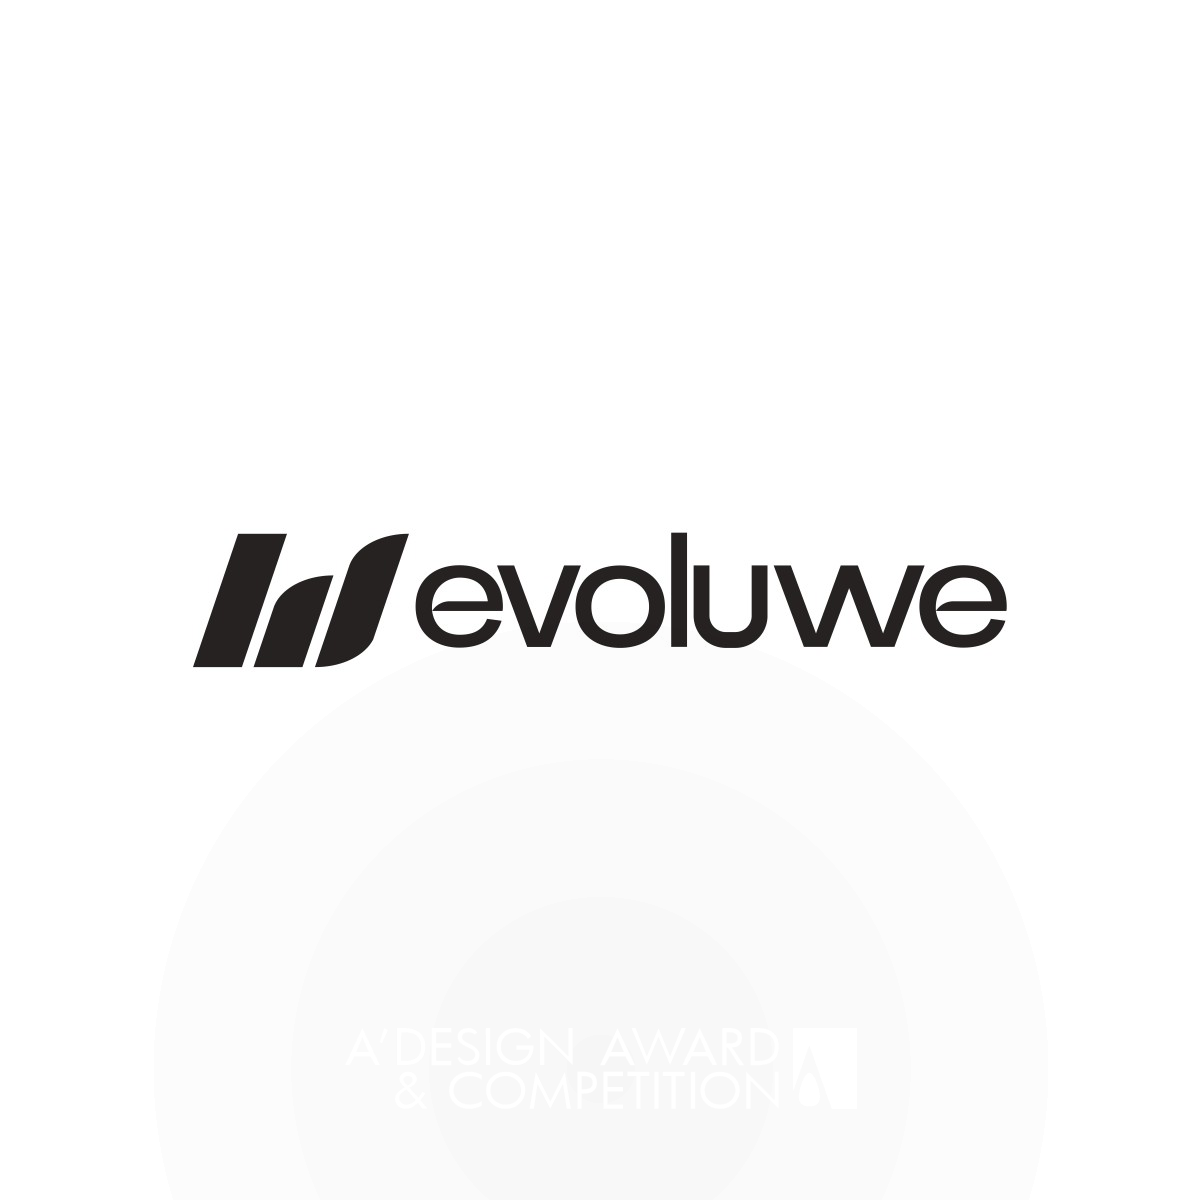 Evoluwe: Eine innovative Marke für kundenorientierte Beratung